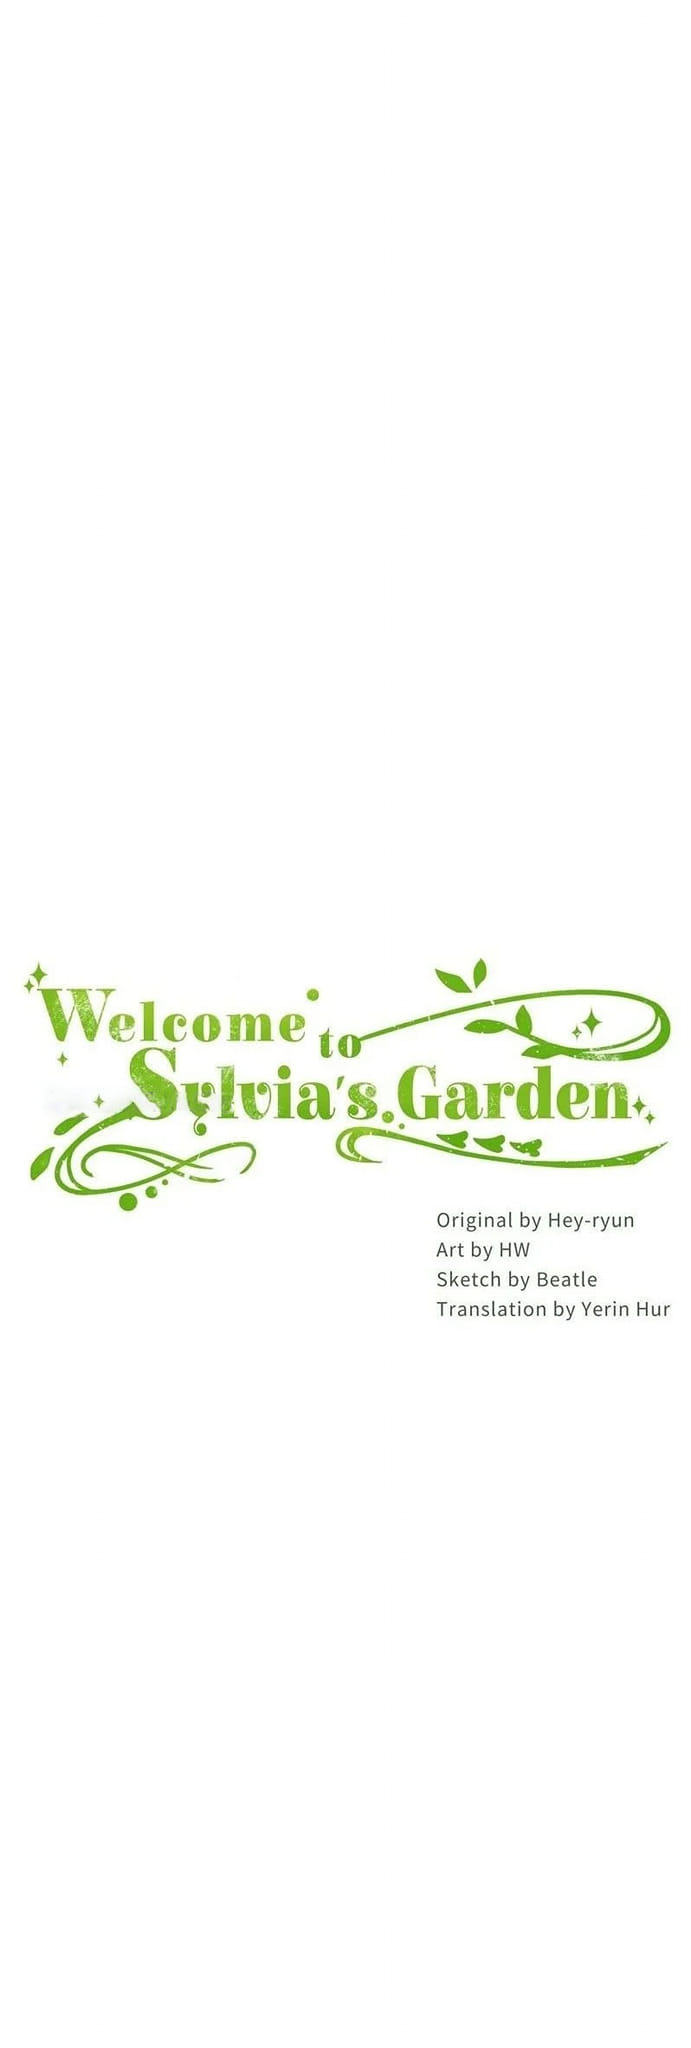 Welcome to Sylvia's Garden 54 (1)